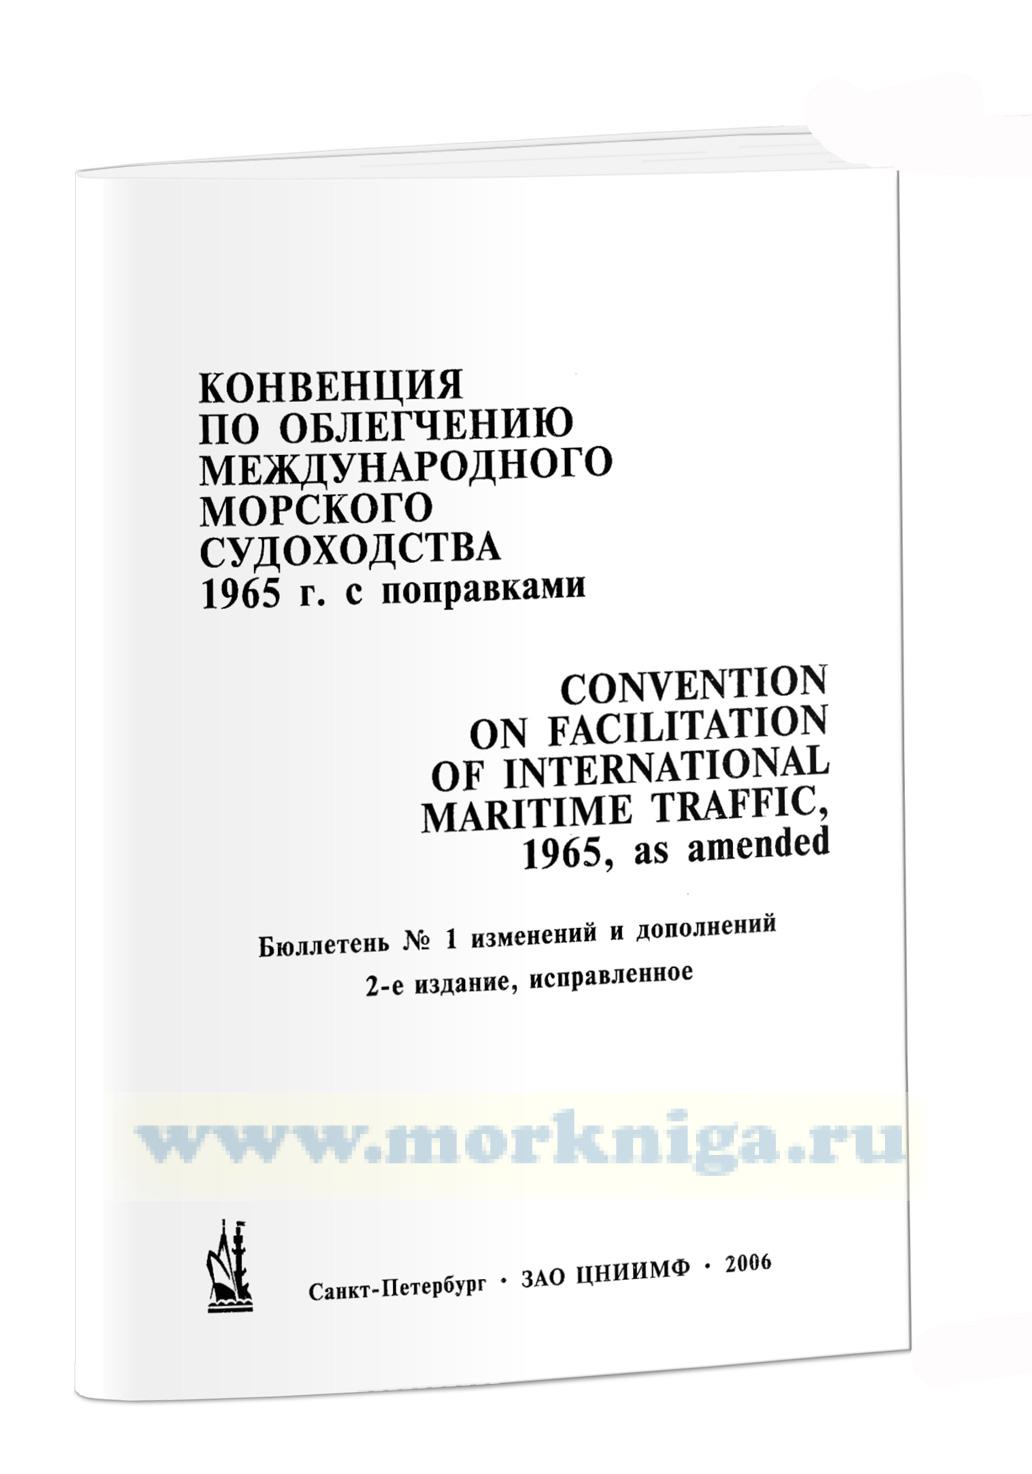 Бюллетень № 1 к Международной конвенции по облегчению морского судоходства (1965 г. с поправками) (2-е изд.)